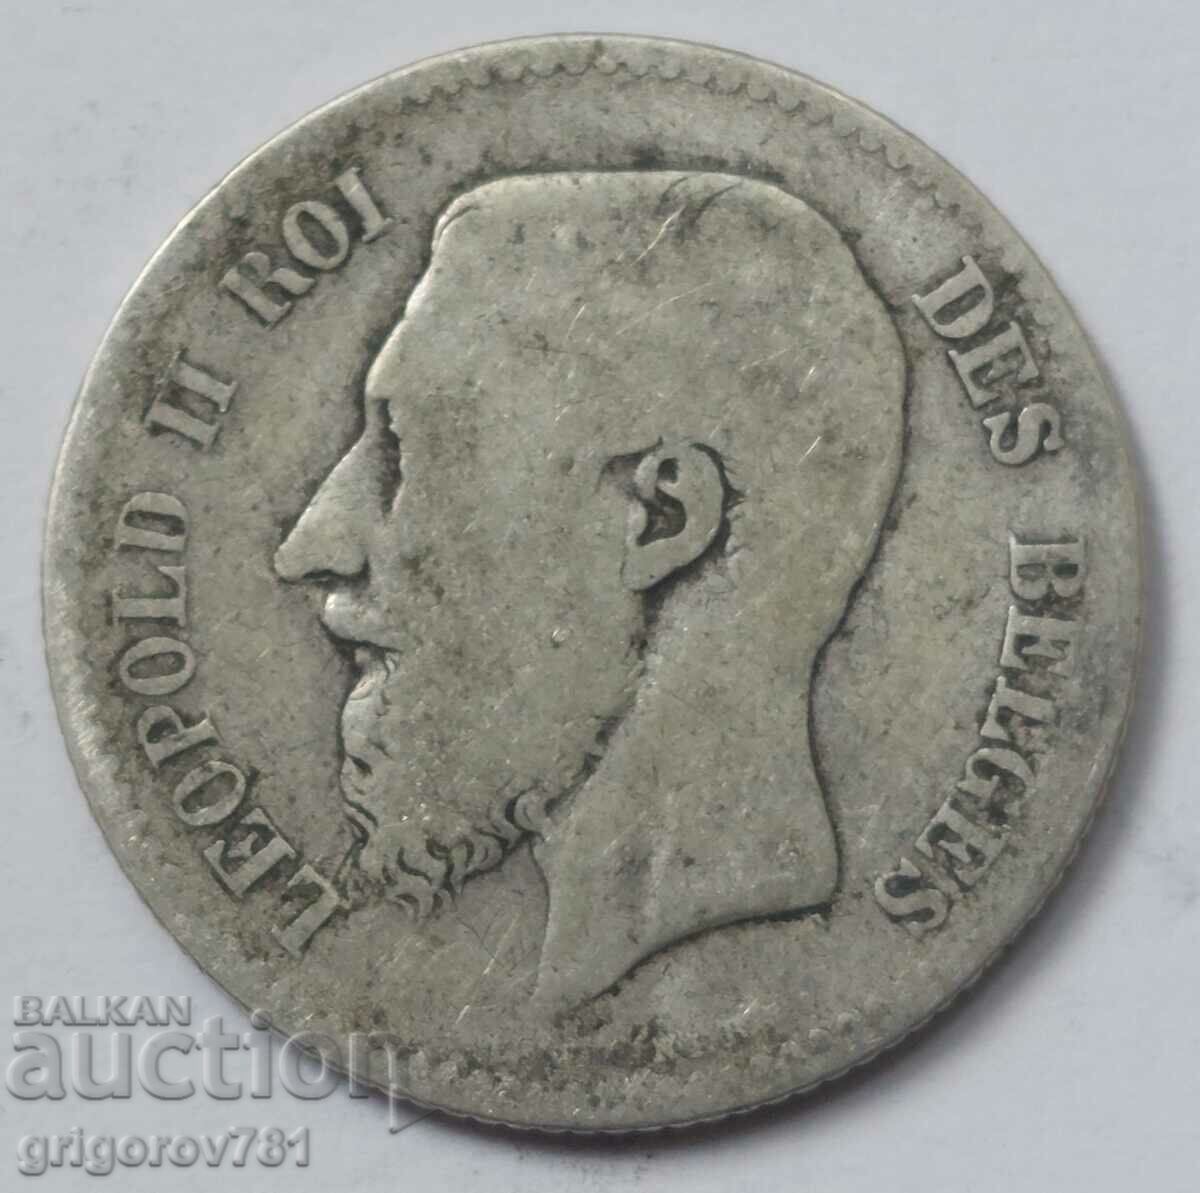 1 franc silver Belgium 1867 - silver coin #59